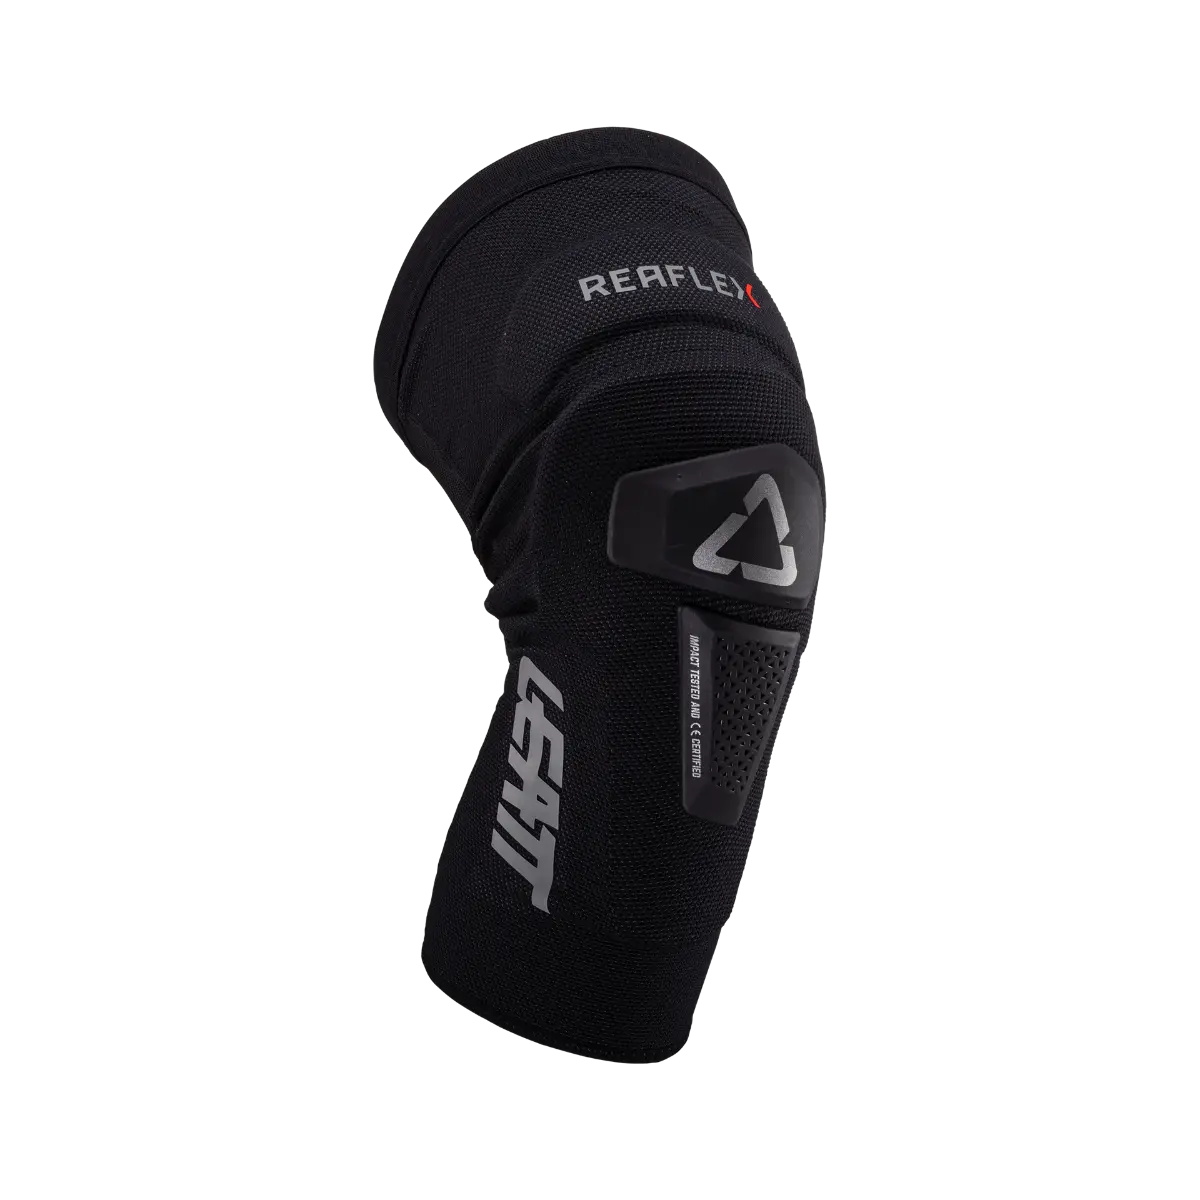 LEATT Knee Guard ReaFlex Hybrid Pro